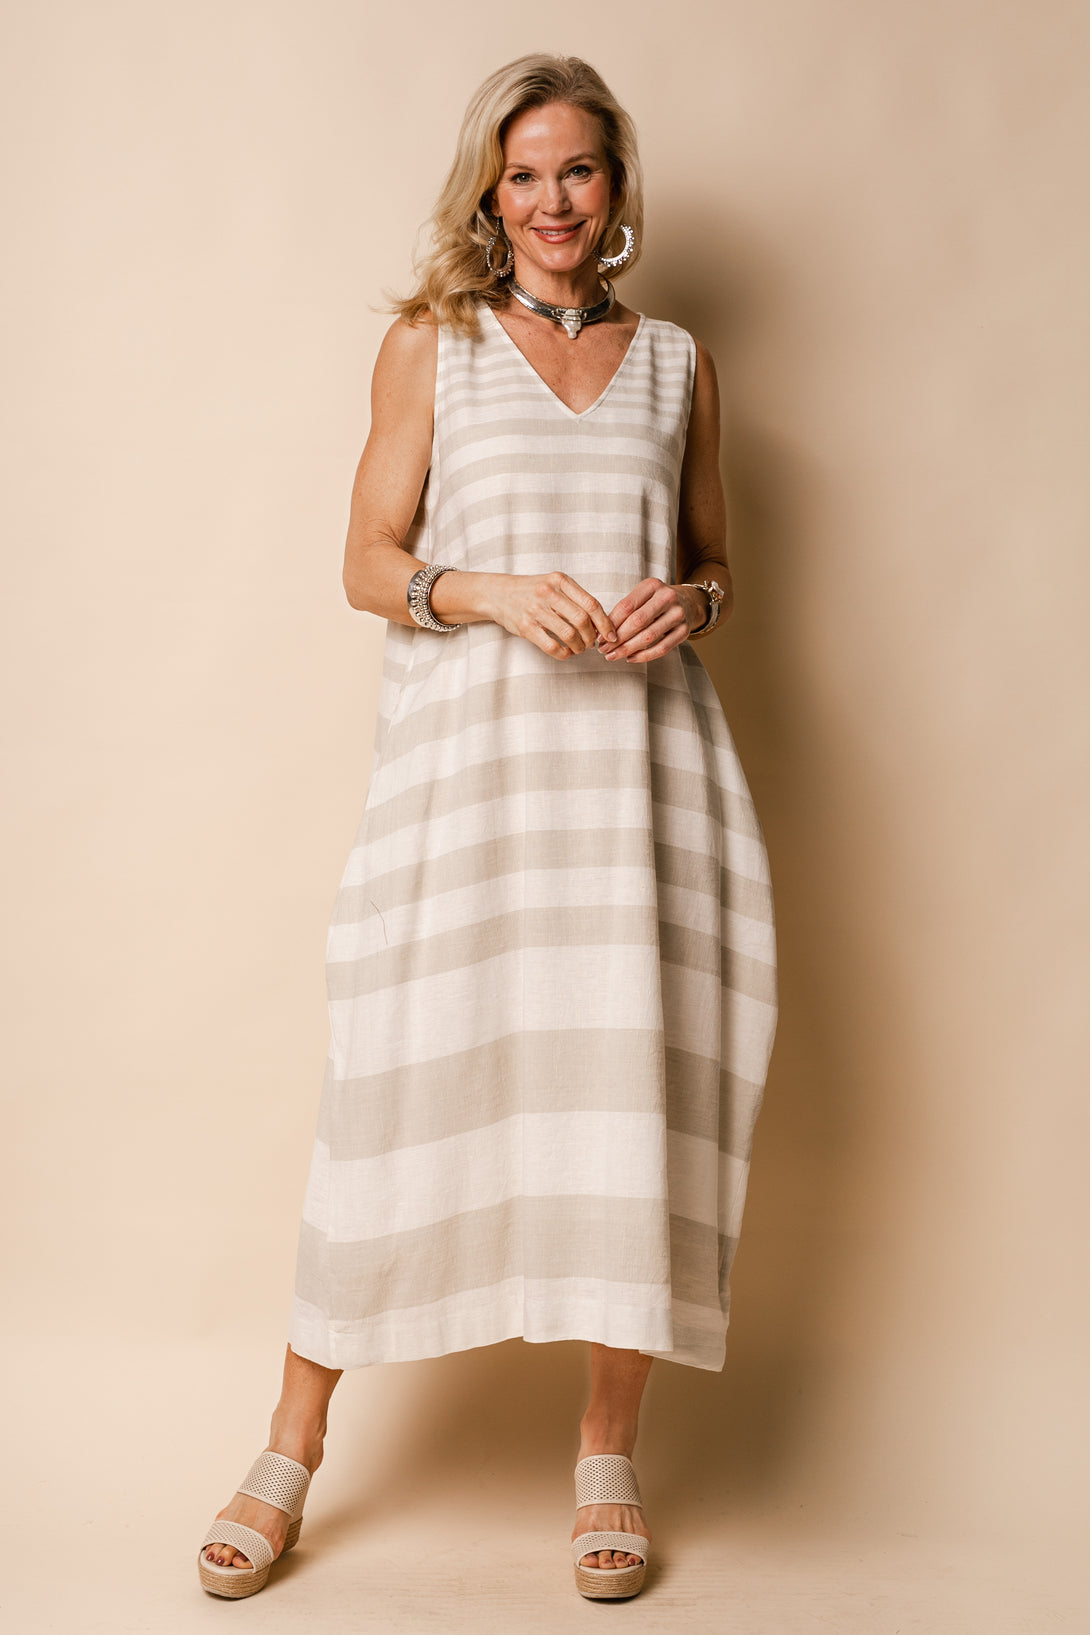 Joplin Linen Blend Dress in Latte - Imagine Fashion